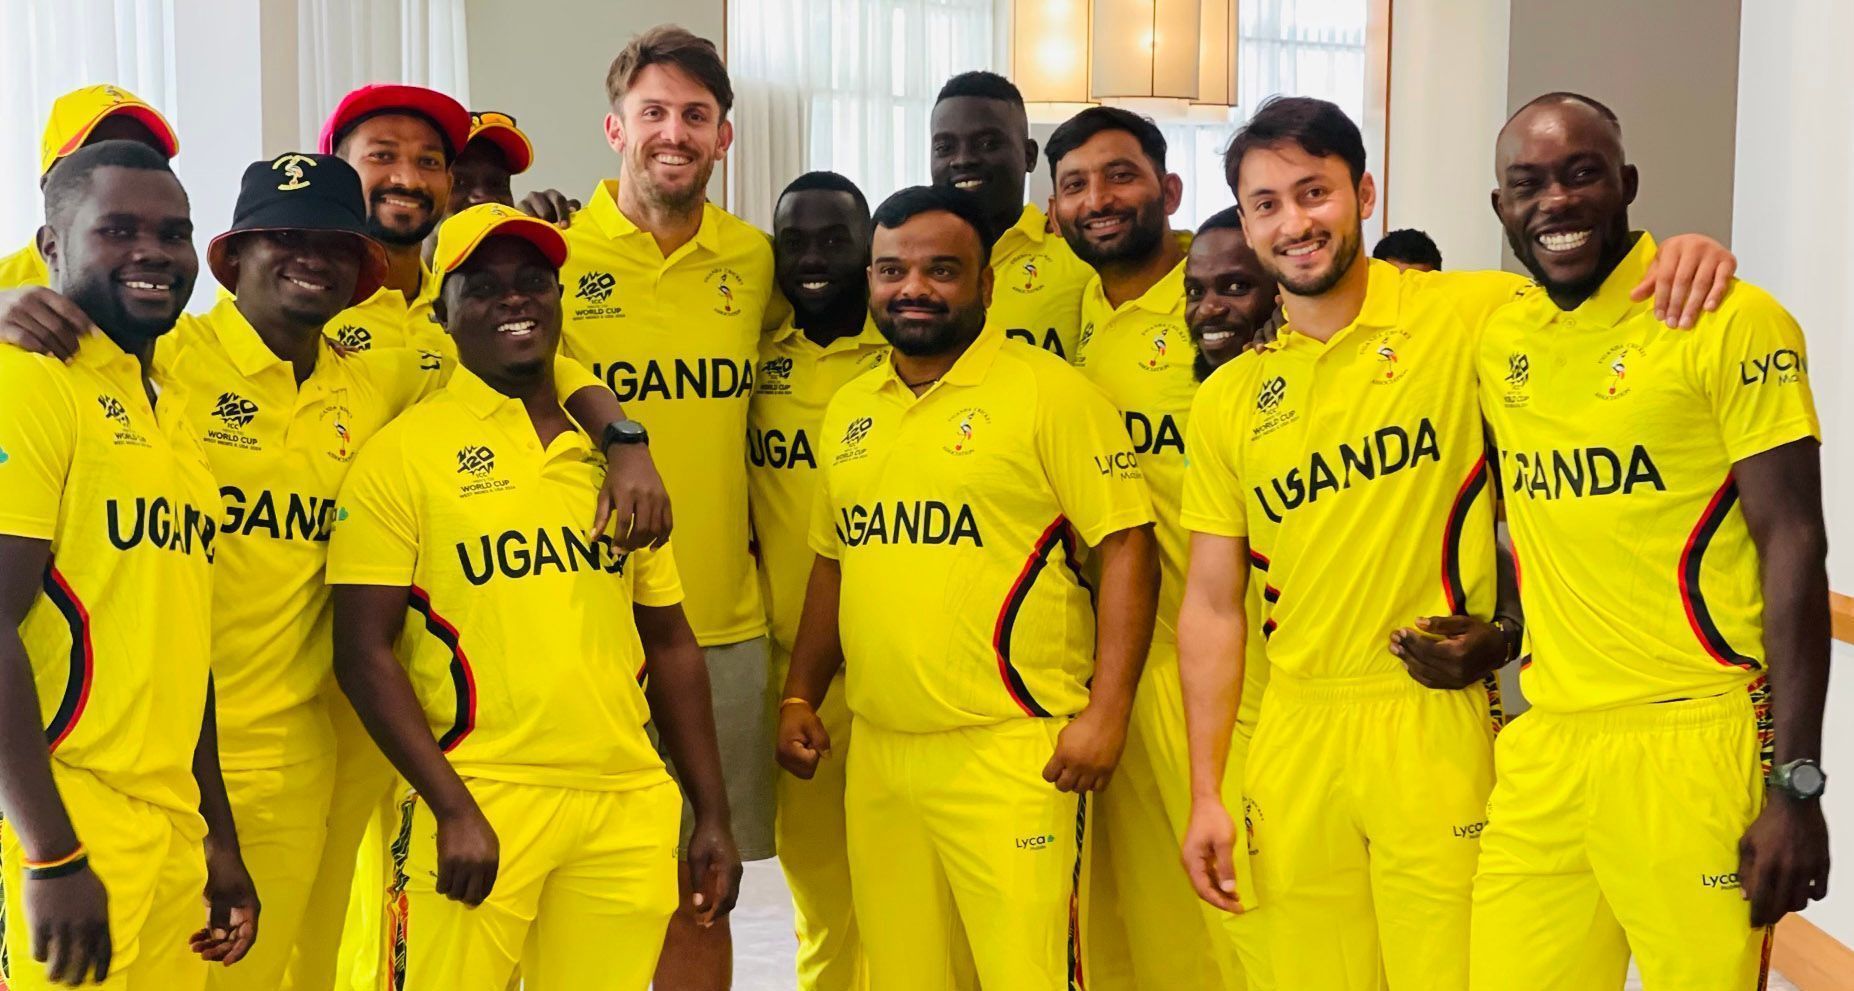 मिचेल मार्श युगांडा टीम की जर्सी में आए नजर (Photo Credit- Cricket Australia)